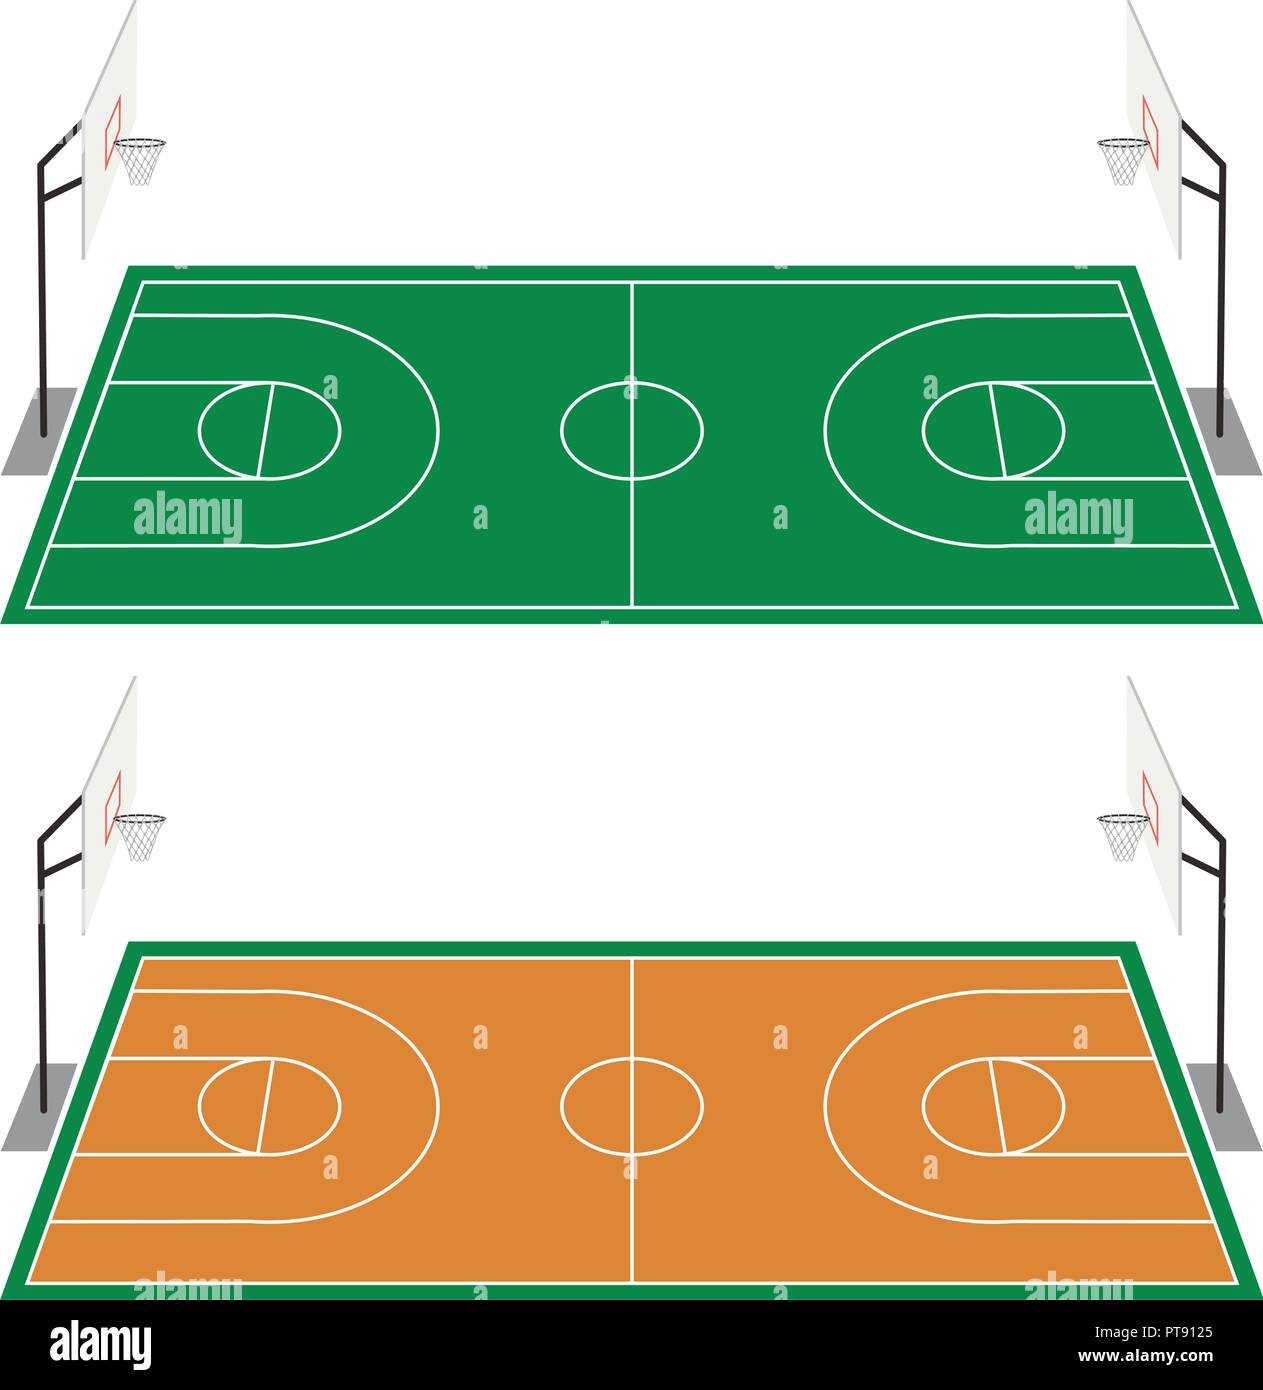 Canchas de basquetbol Imágenes vectoriales de stock - Alamy